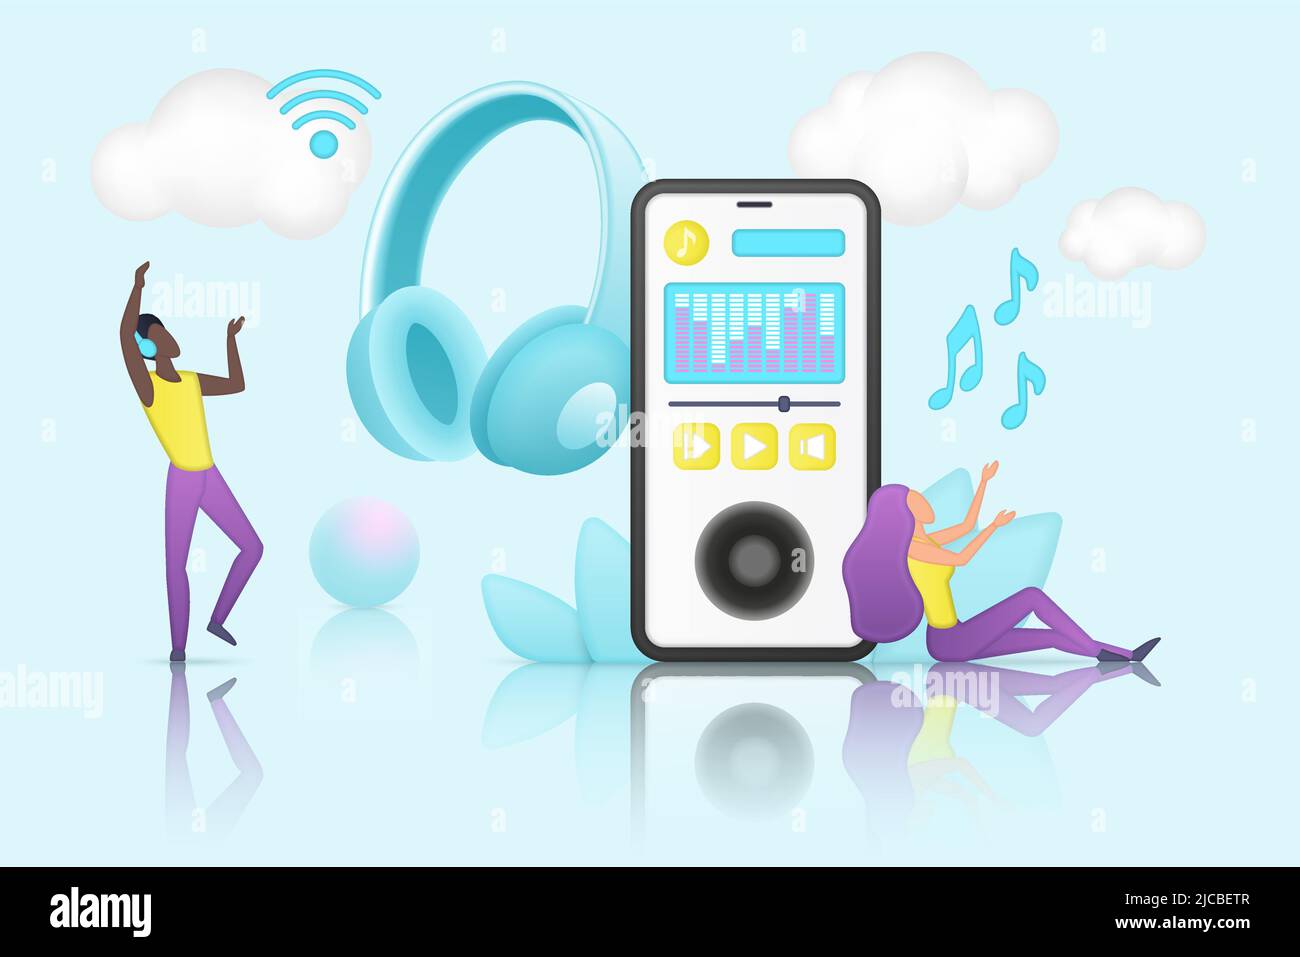 Online-Musik, Radiowerbung und mobile Apps zum Suchen und Herunterladen von mp3 Sound. Fröhliche kleine Menschen tanzen und hören Musik über Smartphone und Kopfhörer Vektorgrafik. Konzept für digitale Medien Stock Vektor